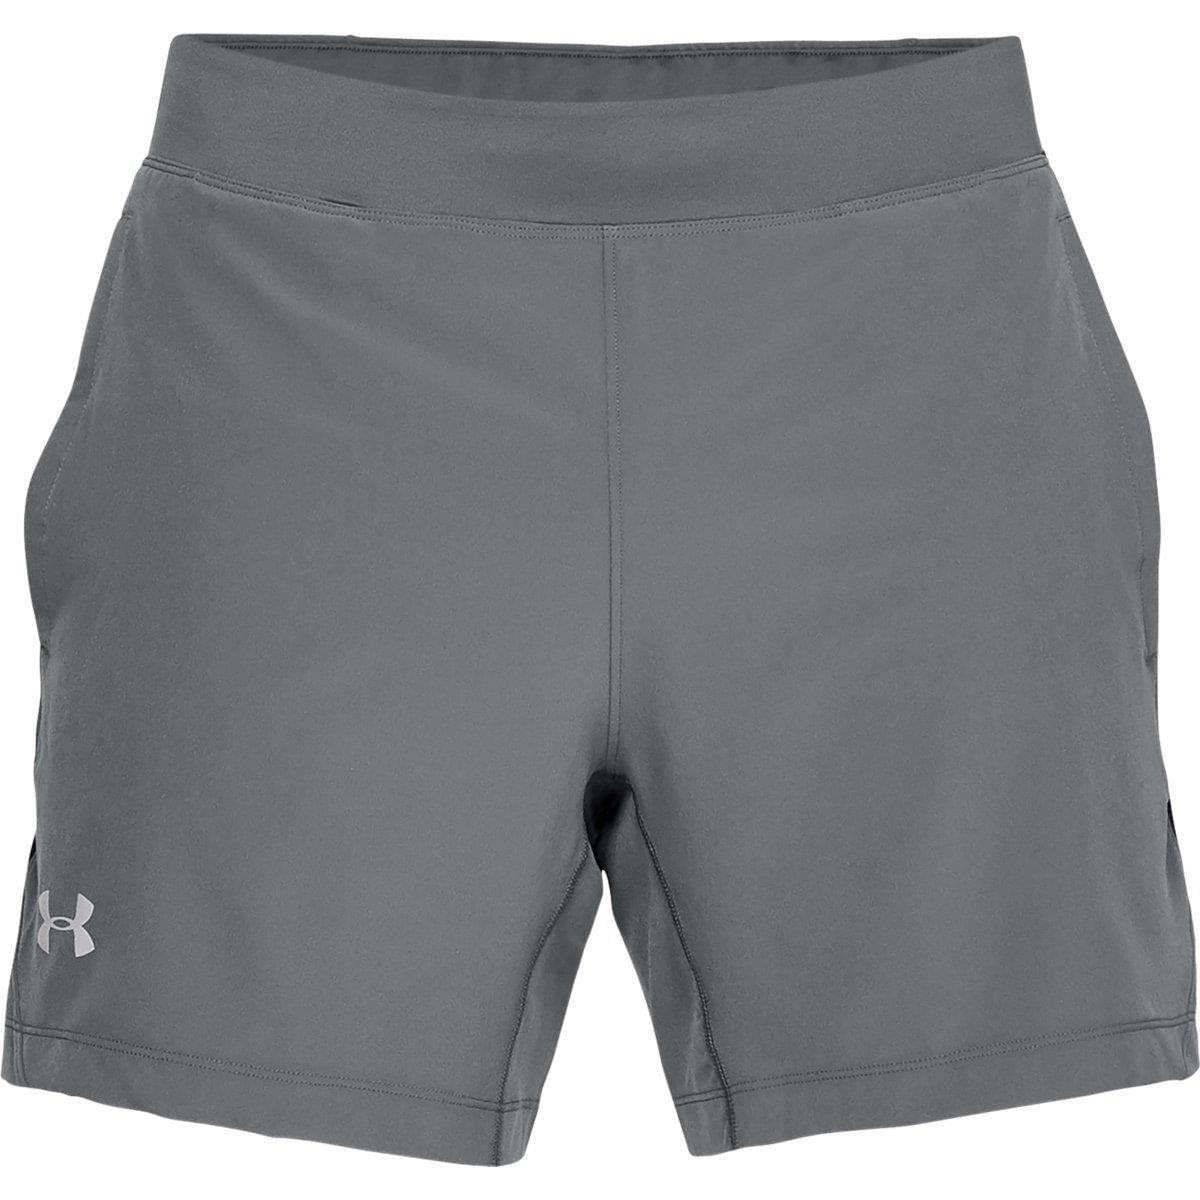 Shorts -  under armour UA Qualifier Speedpocket 2in1 Shorts 6601